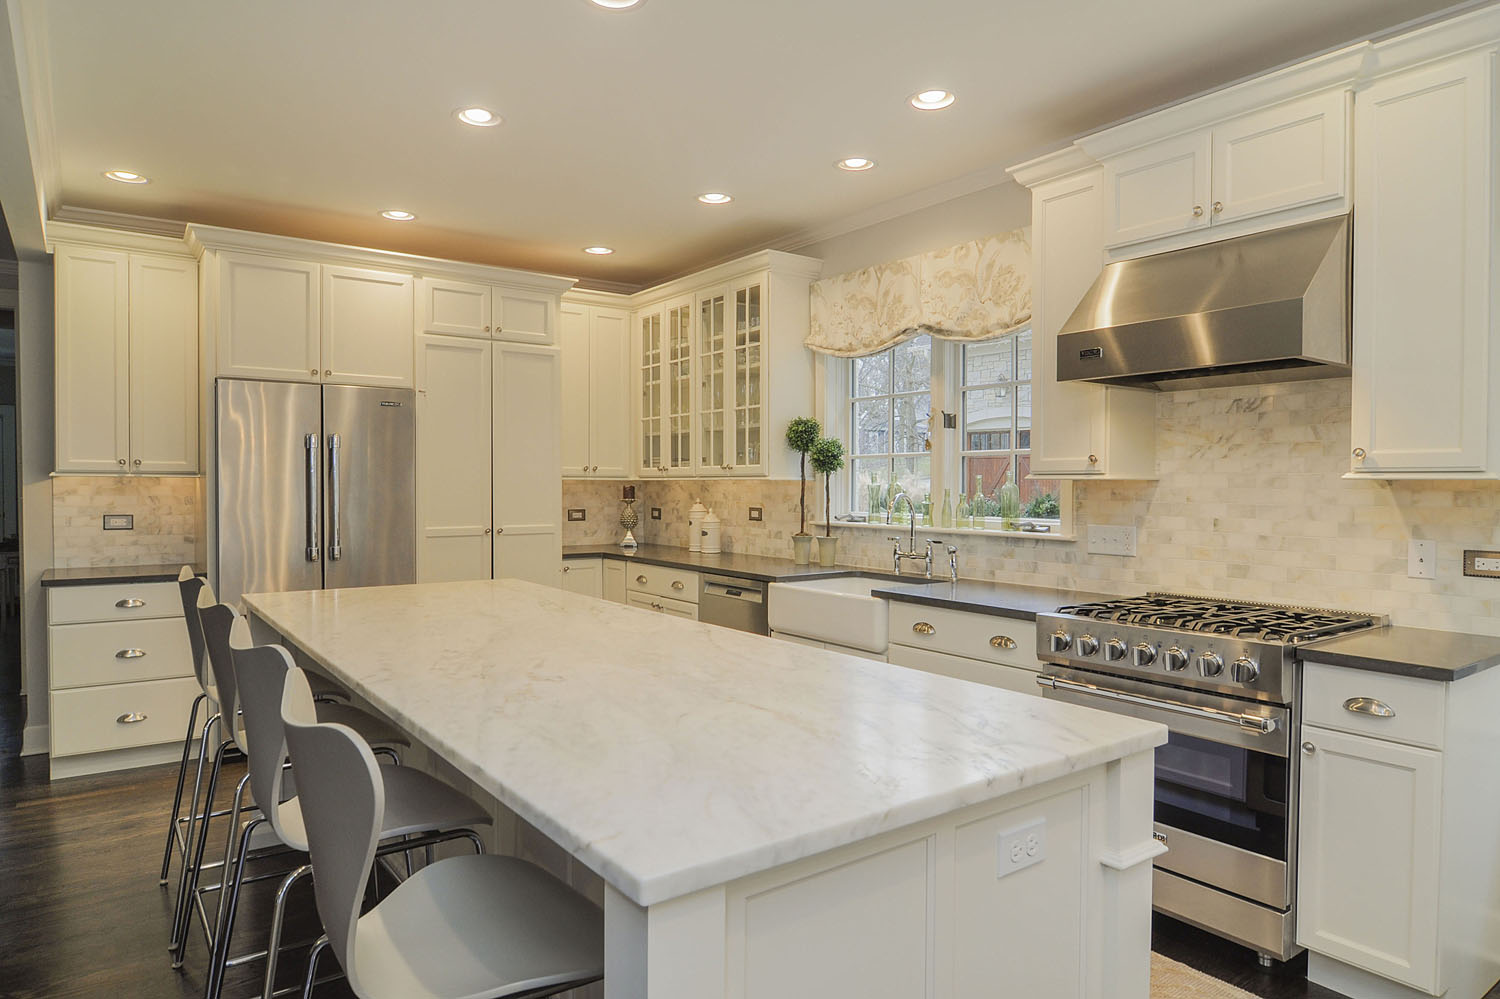 Ben & Ellen's Kitchen Remodel Pictures | Home Remodeling Contractors ...